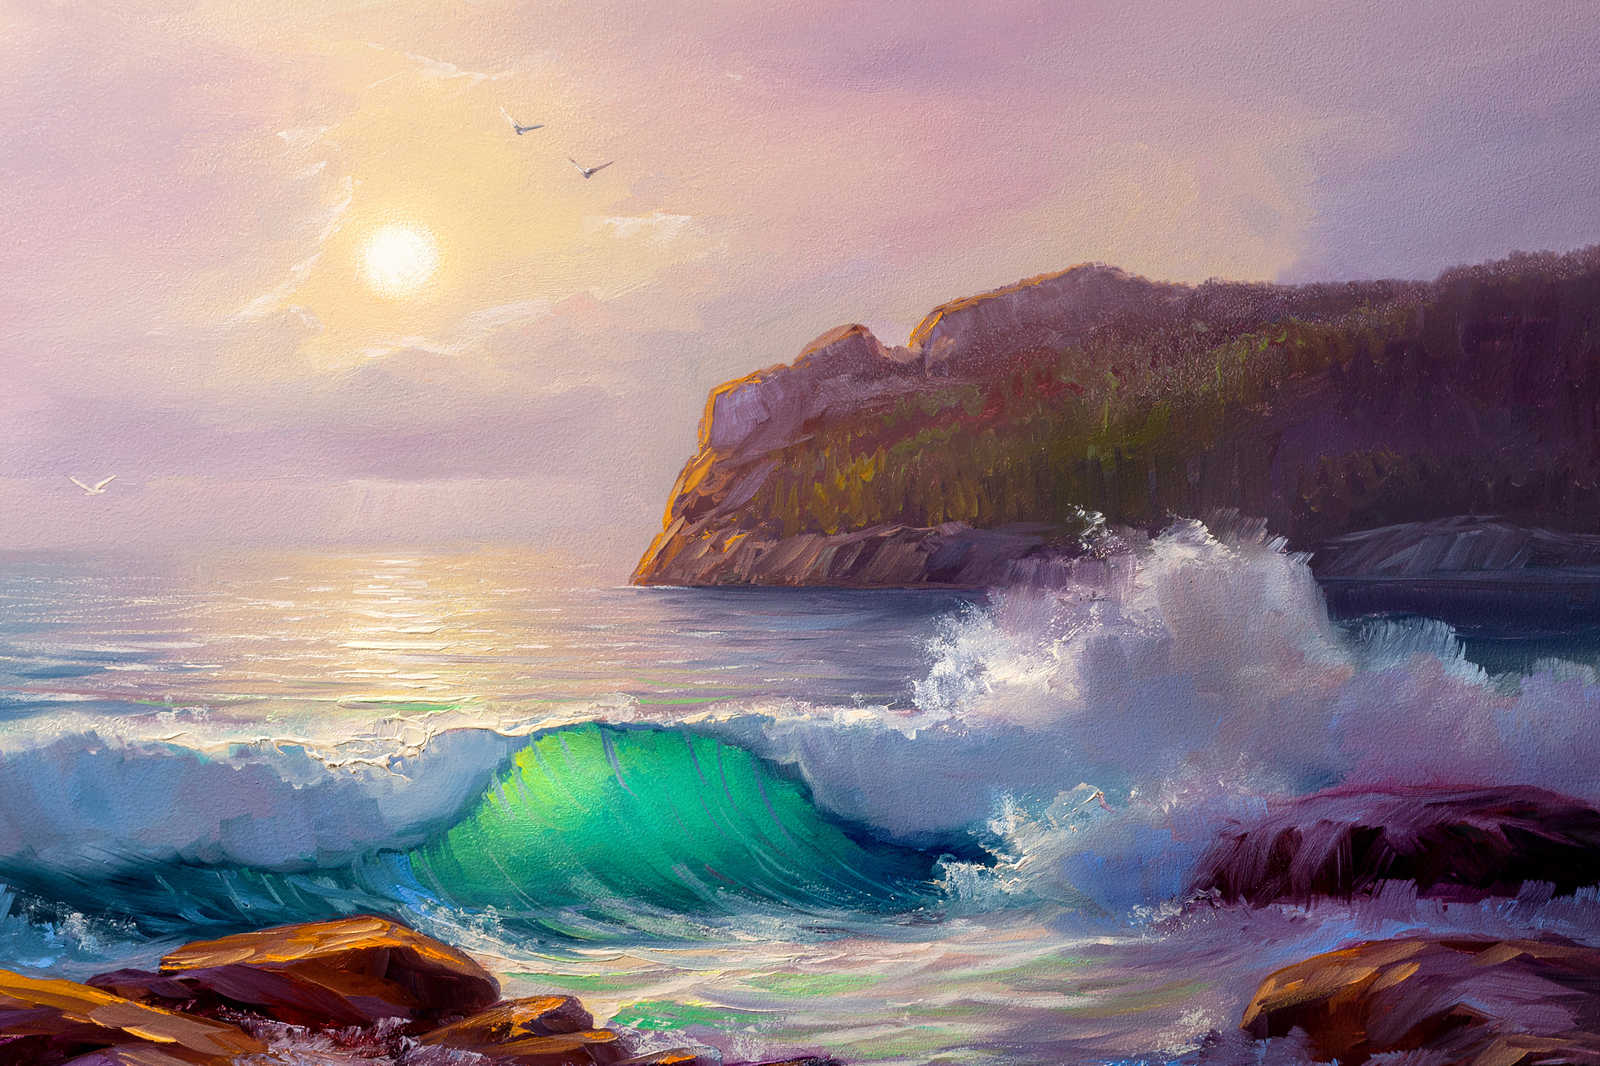             Leinwandbild Gemälde von einer Küste beim Sonnenaufgang – 0,90 m x 0,60 m
        